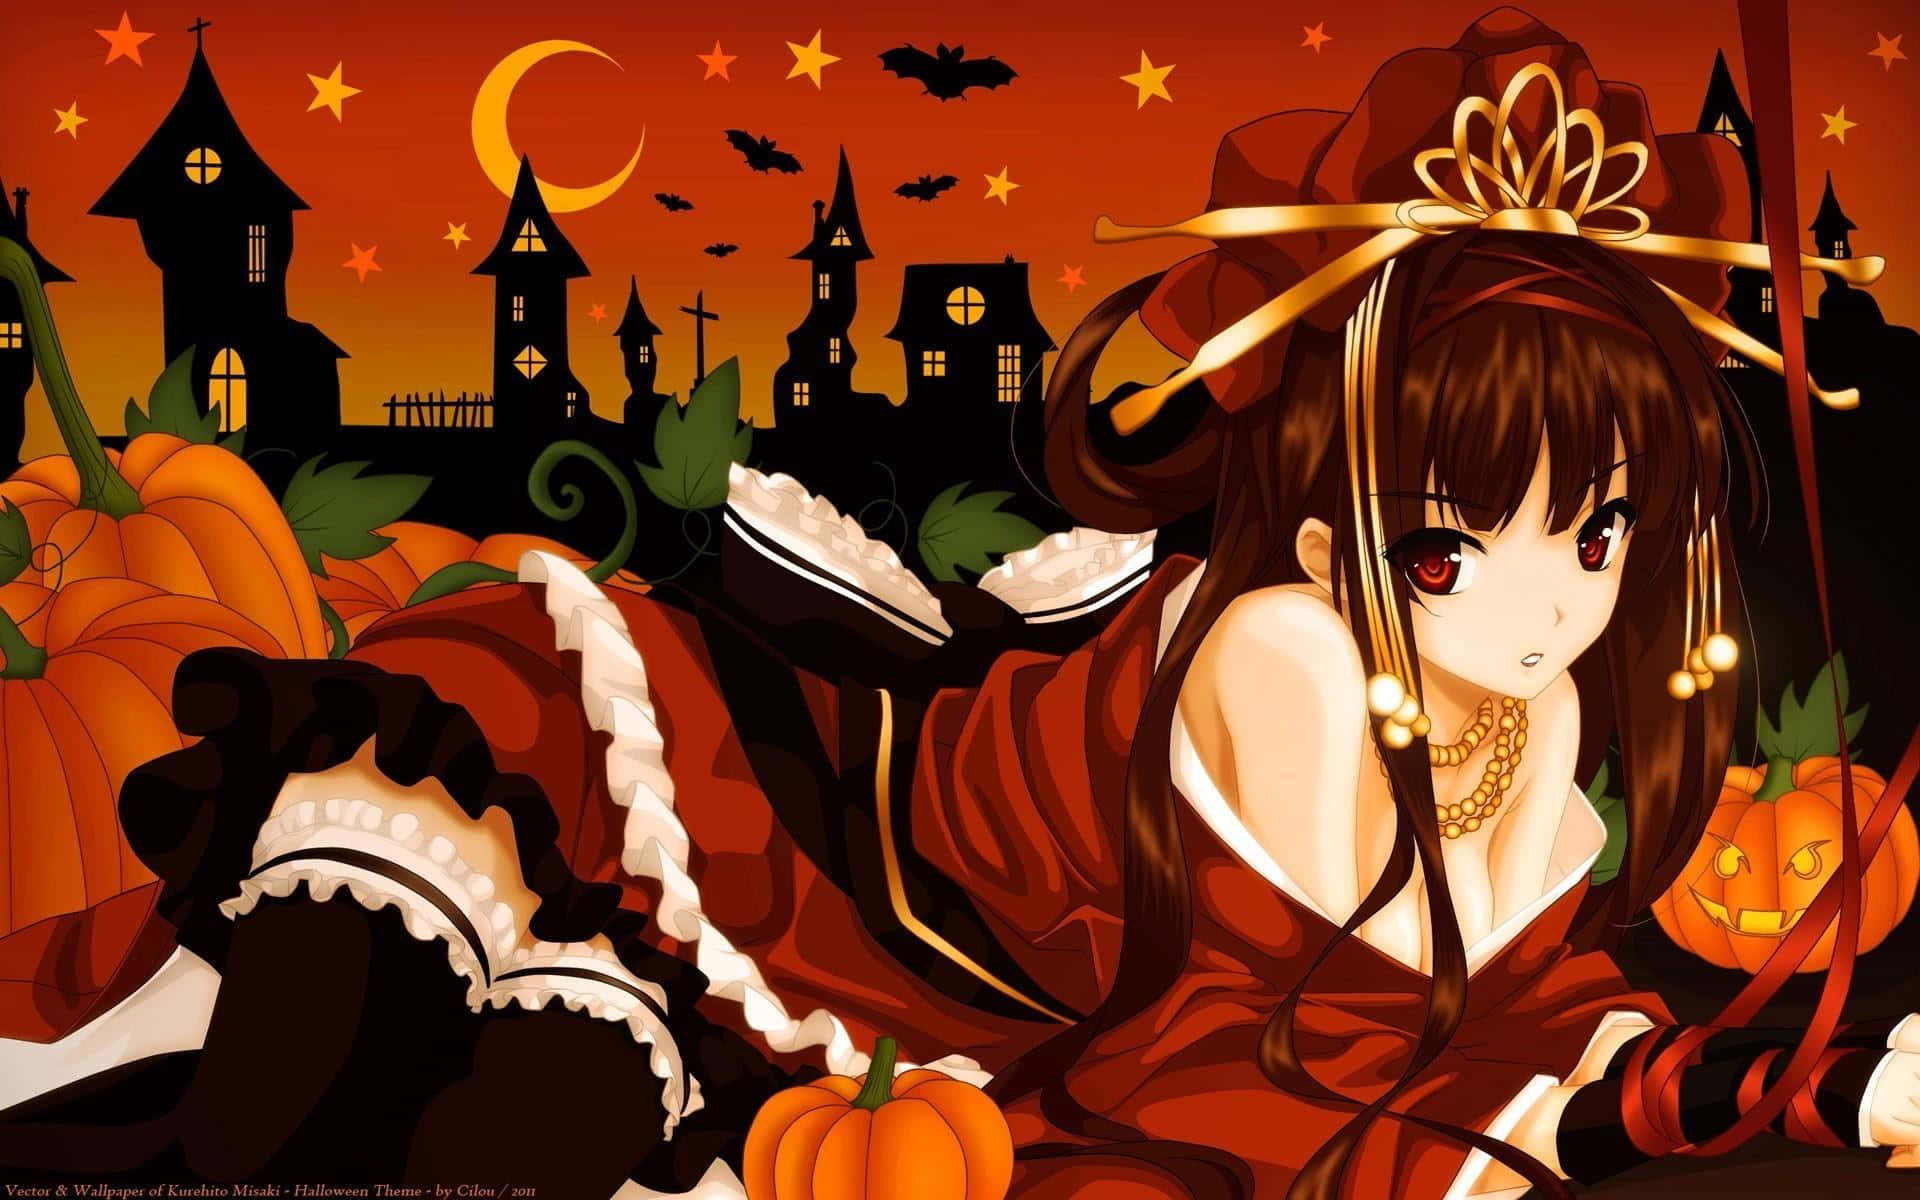 HD wallpaper: Anime, Original, Girl, Halloween, Pumpkin, Witch | Wallpaper  Flare